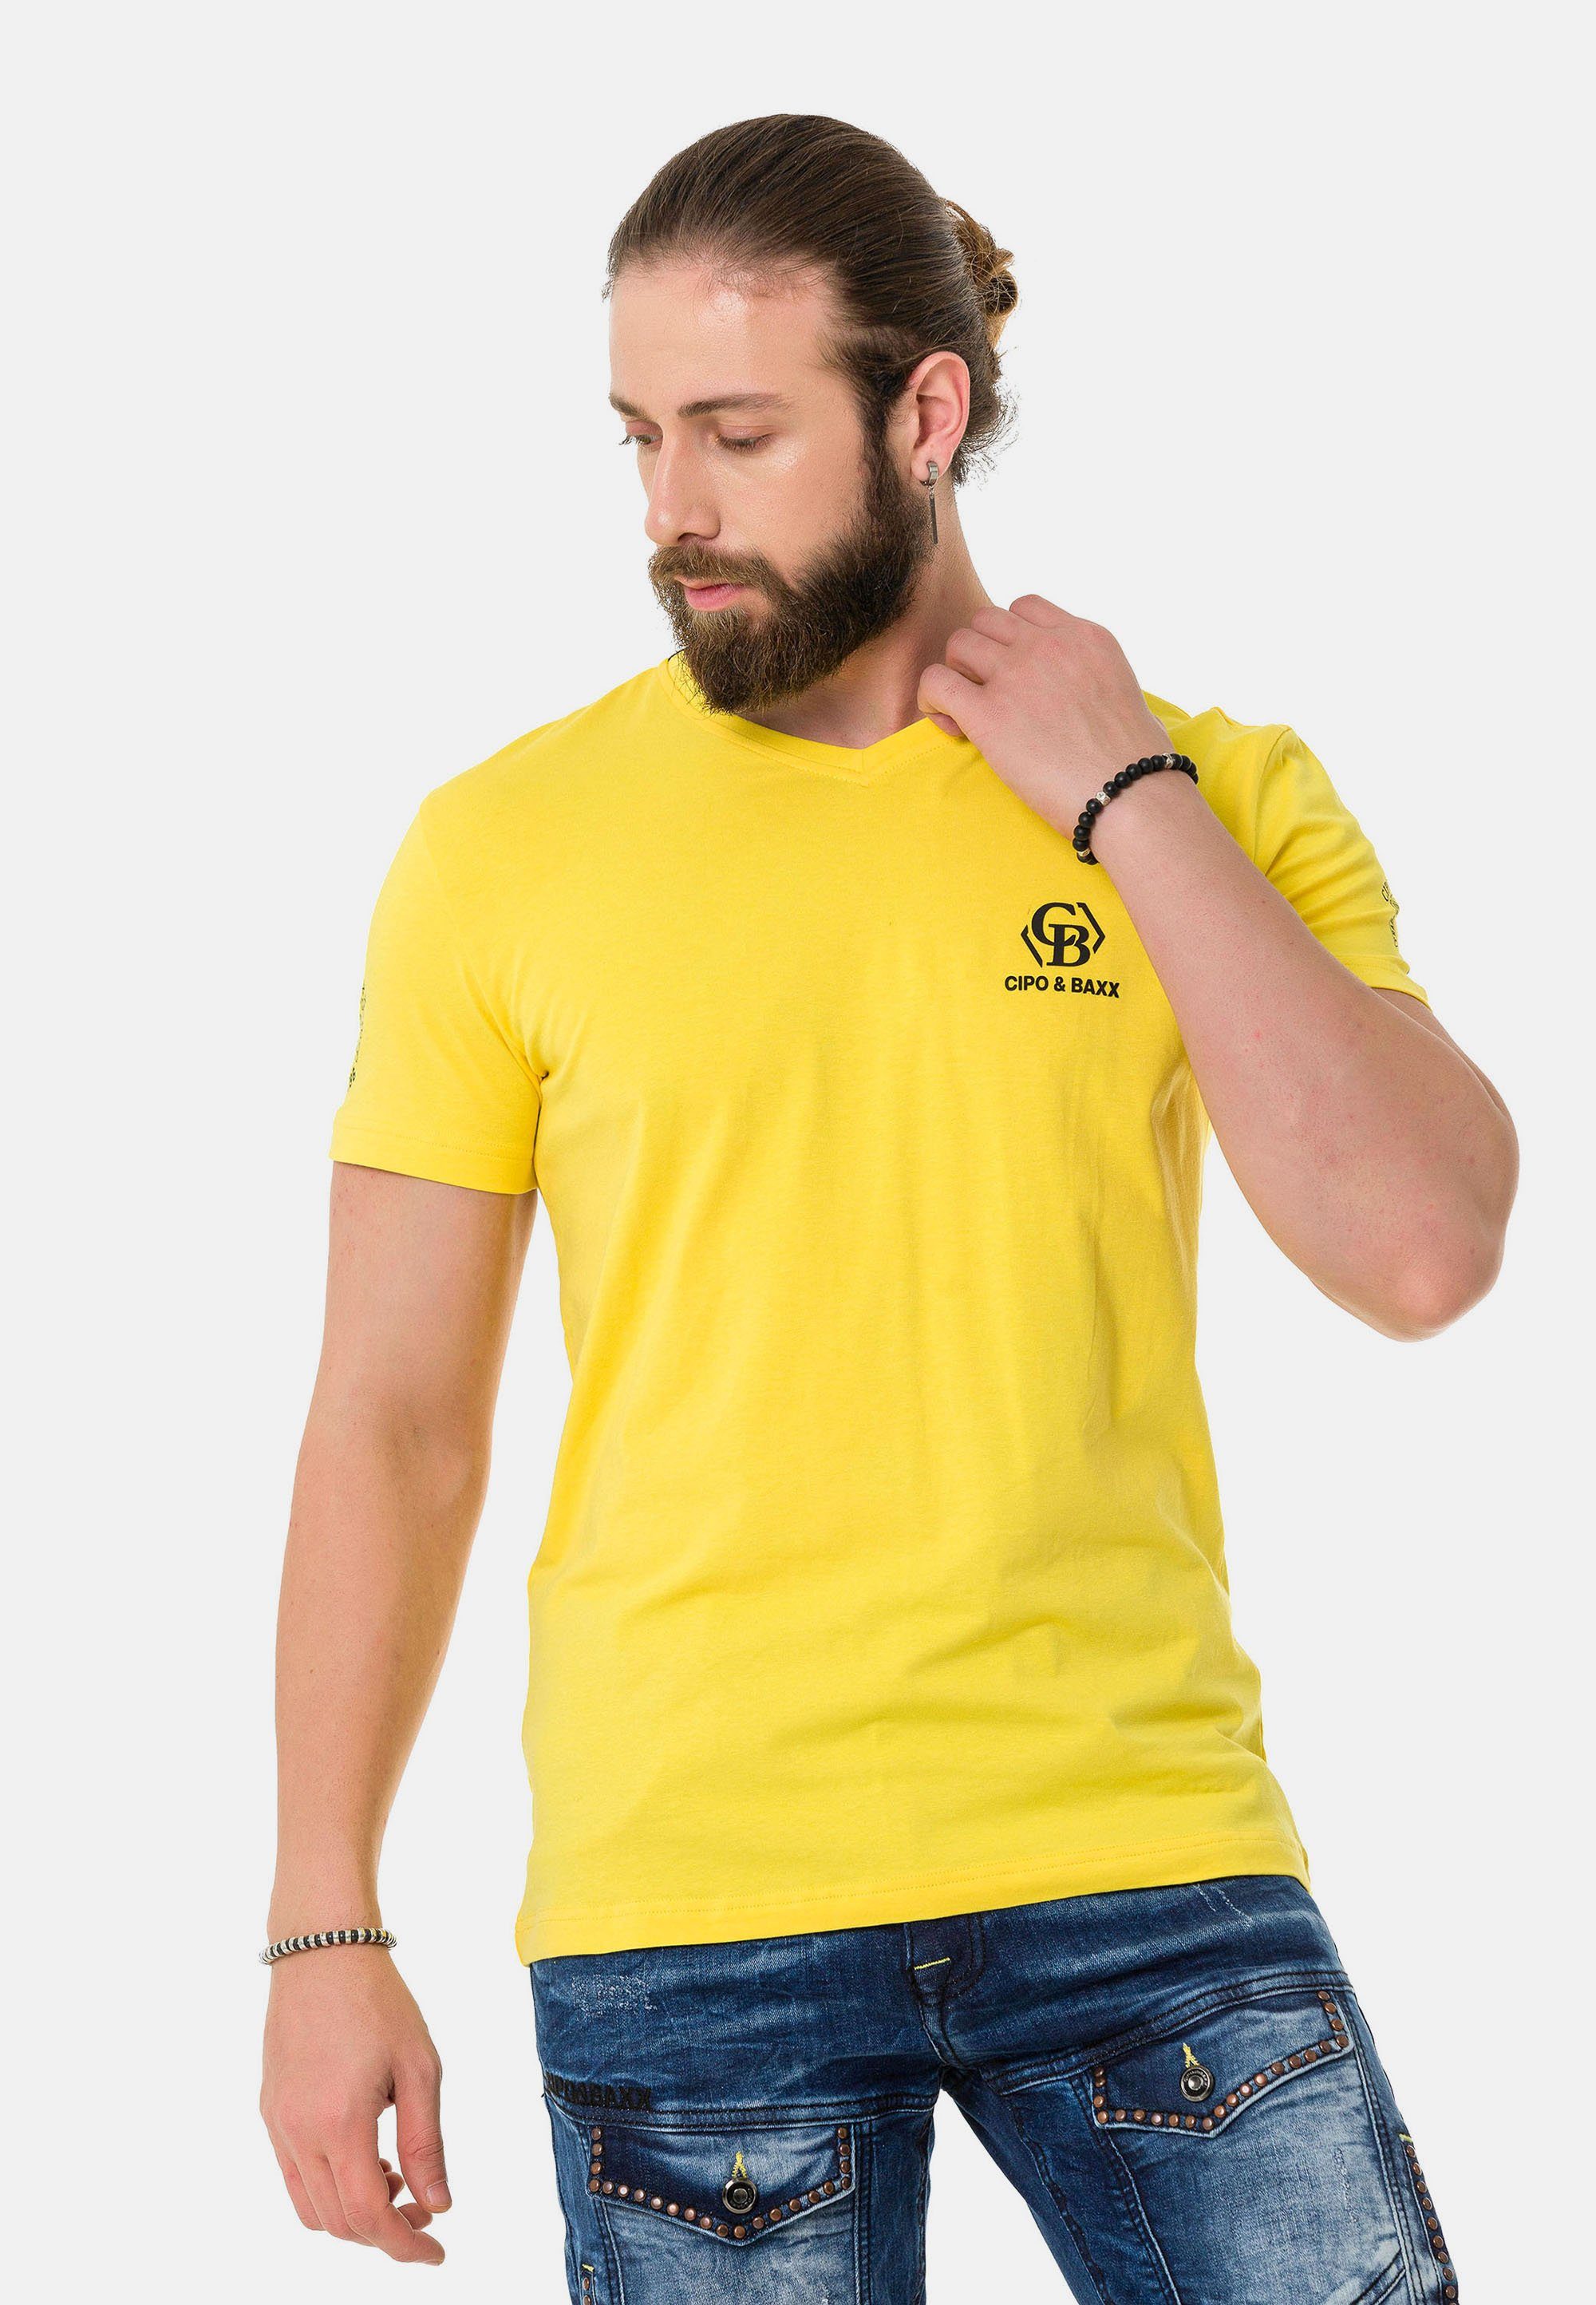 Cipo & Markenlogos T-Shirt Baxx mit dezenten gelb